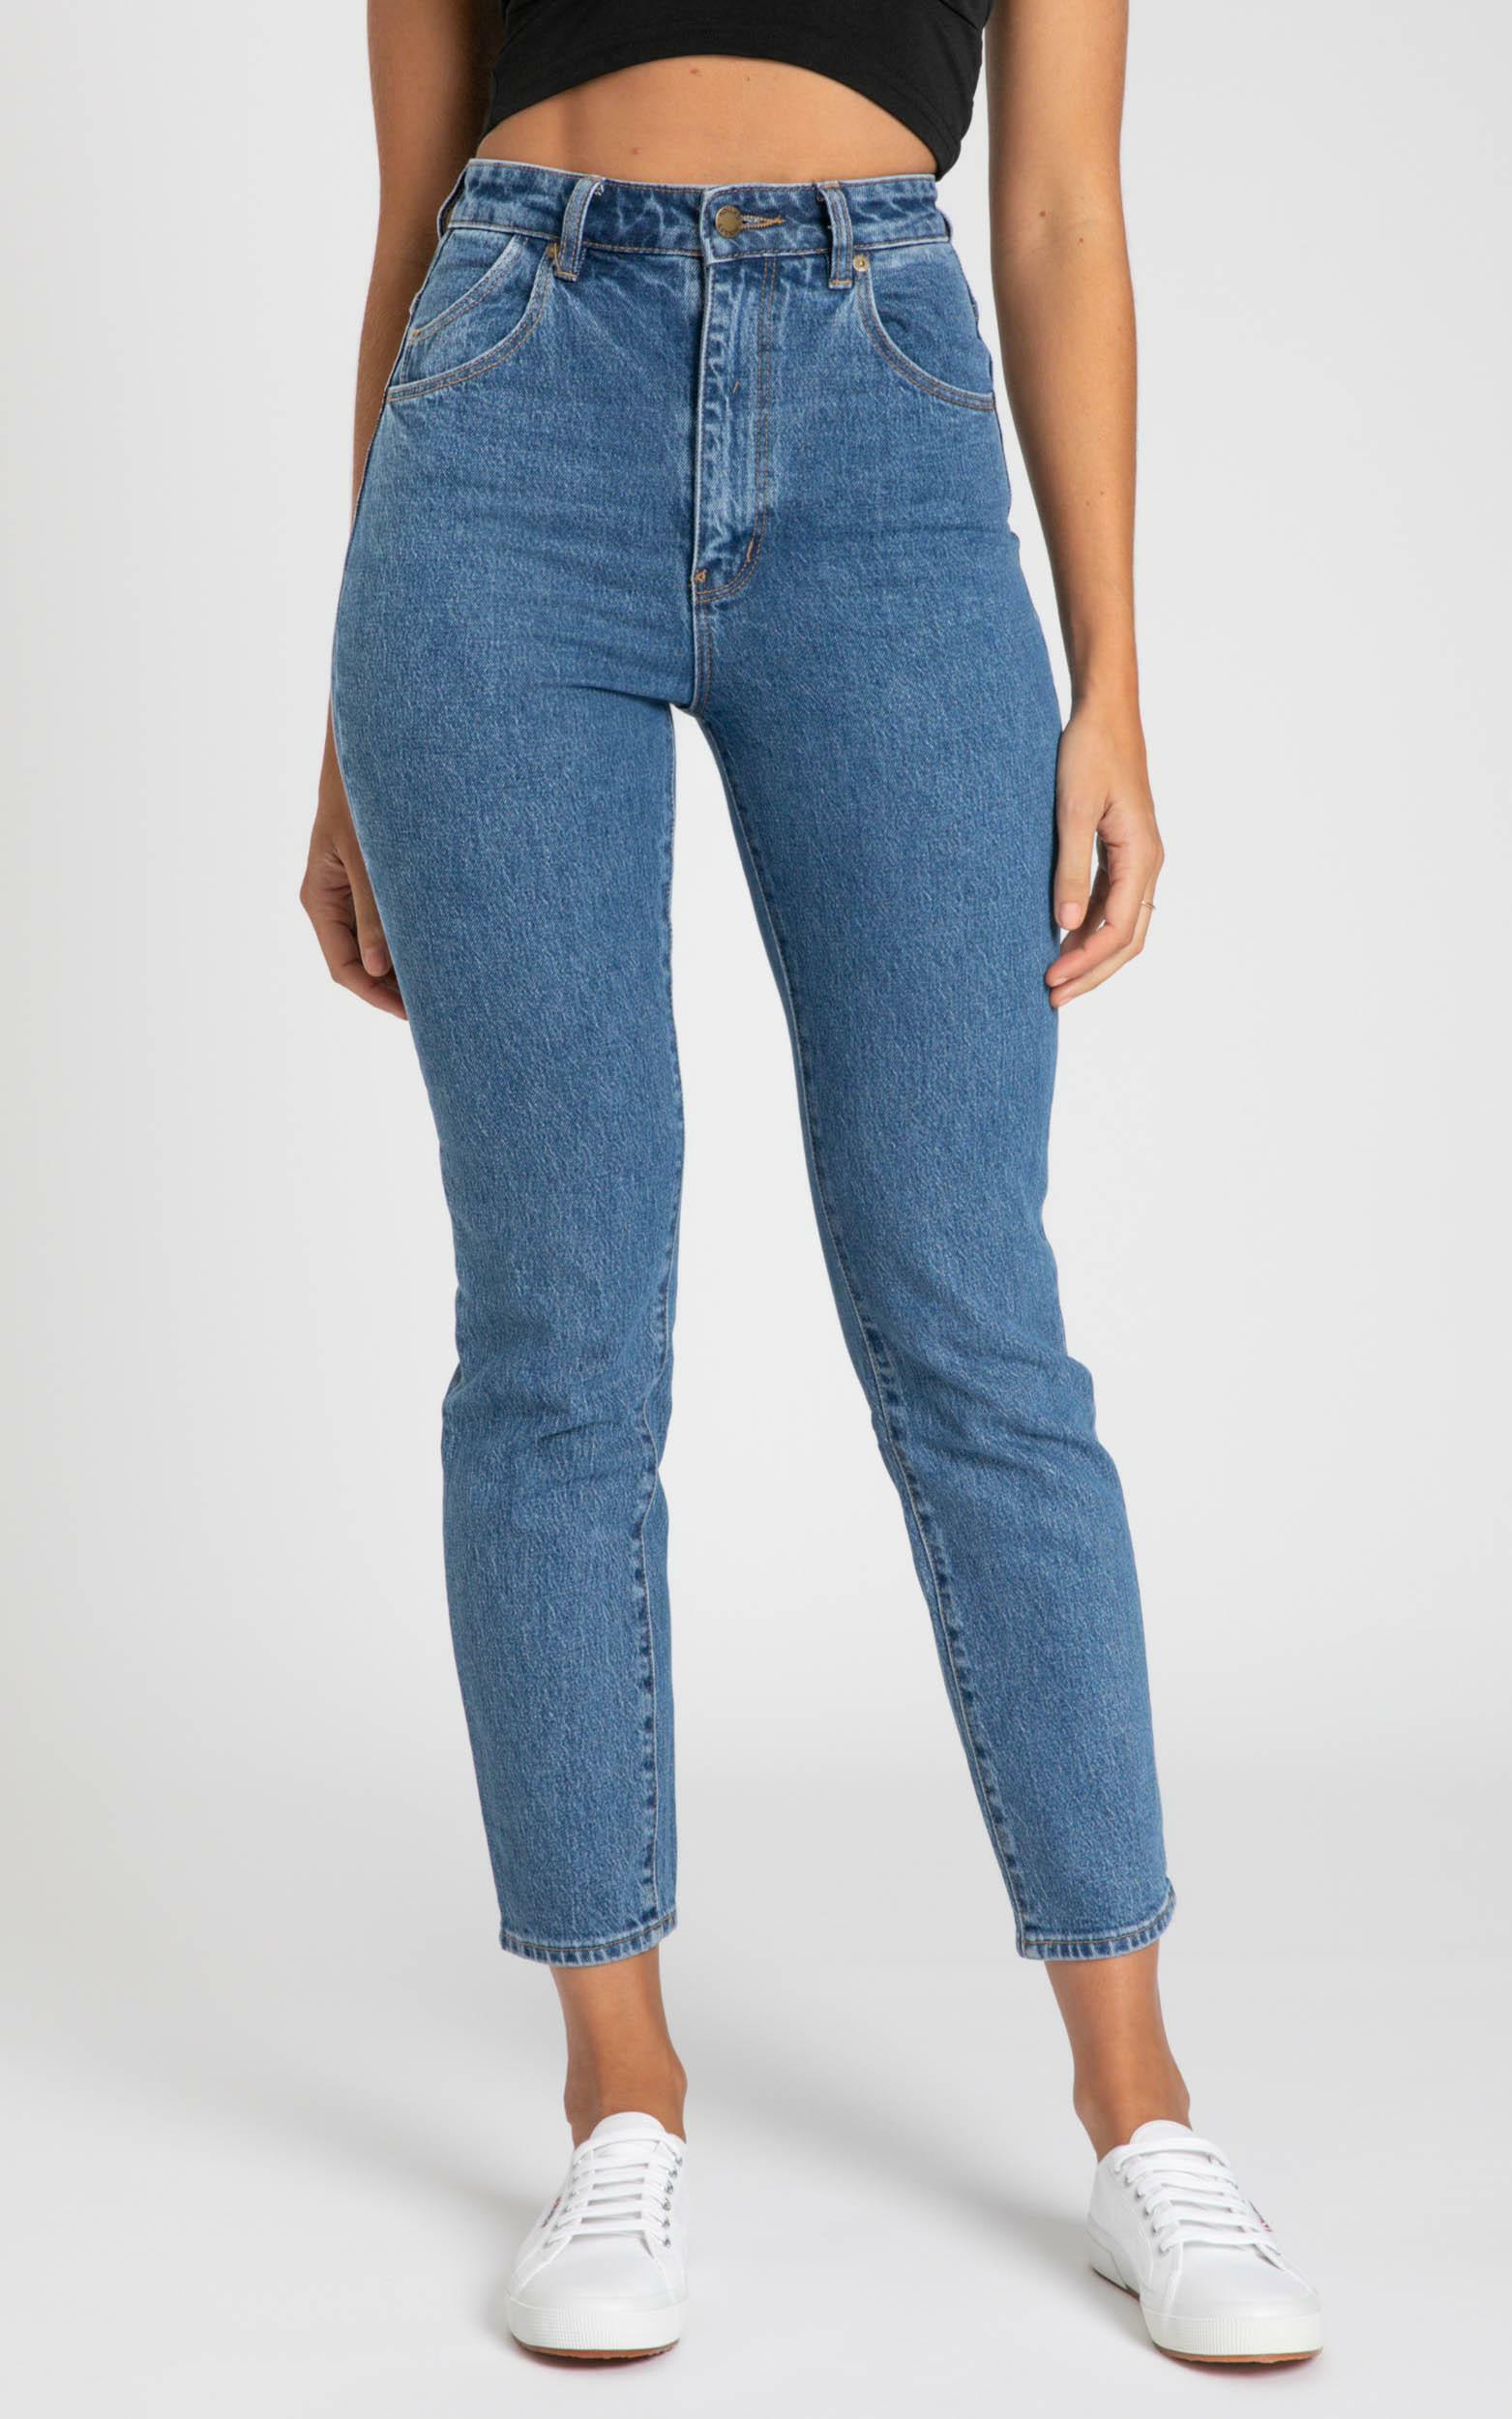 Rollas - Dusters Jeans in Sadie Blue | Showpo